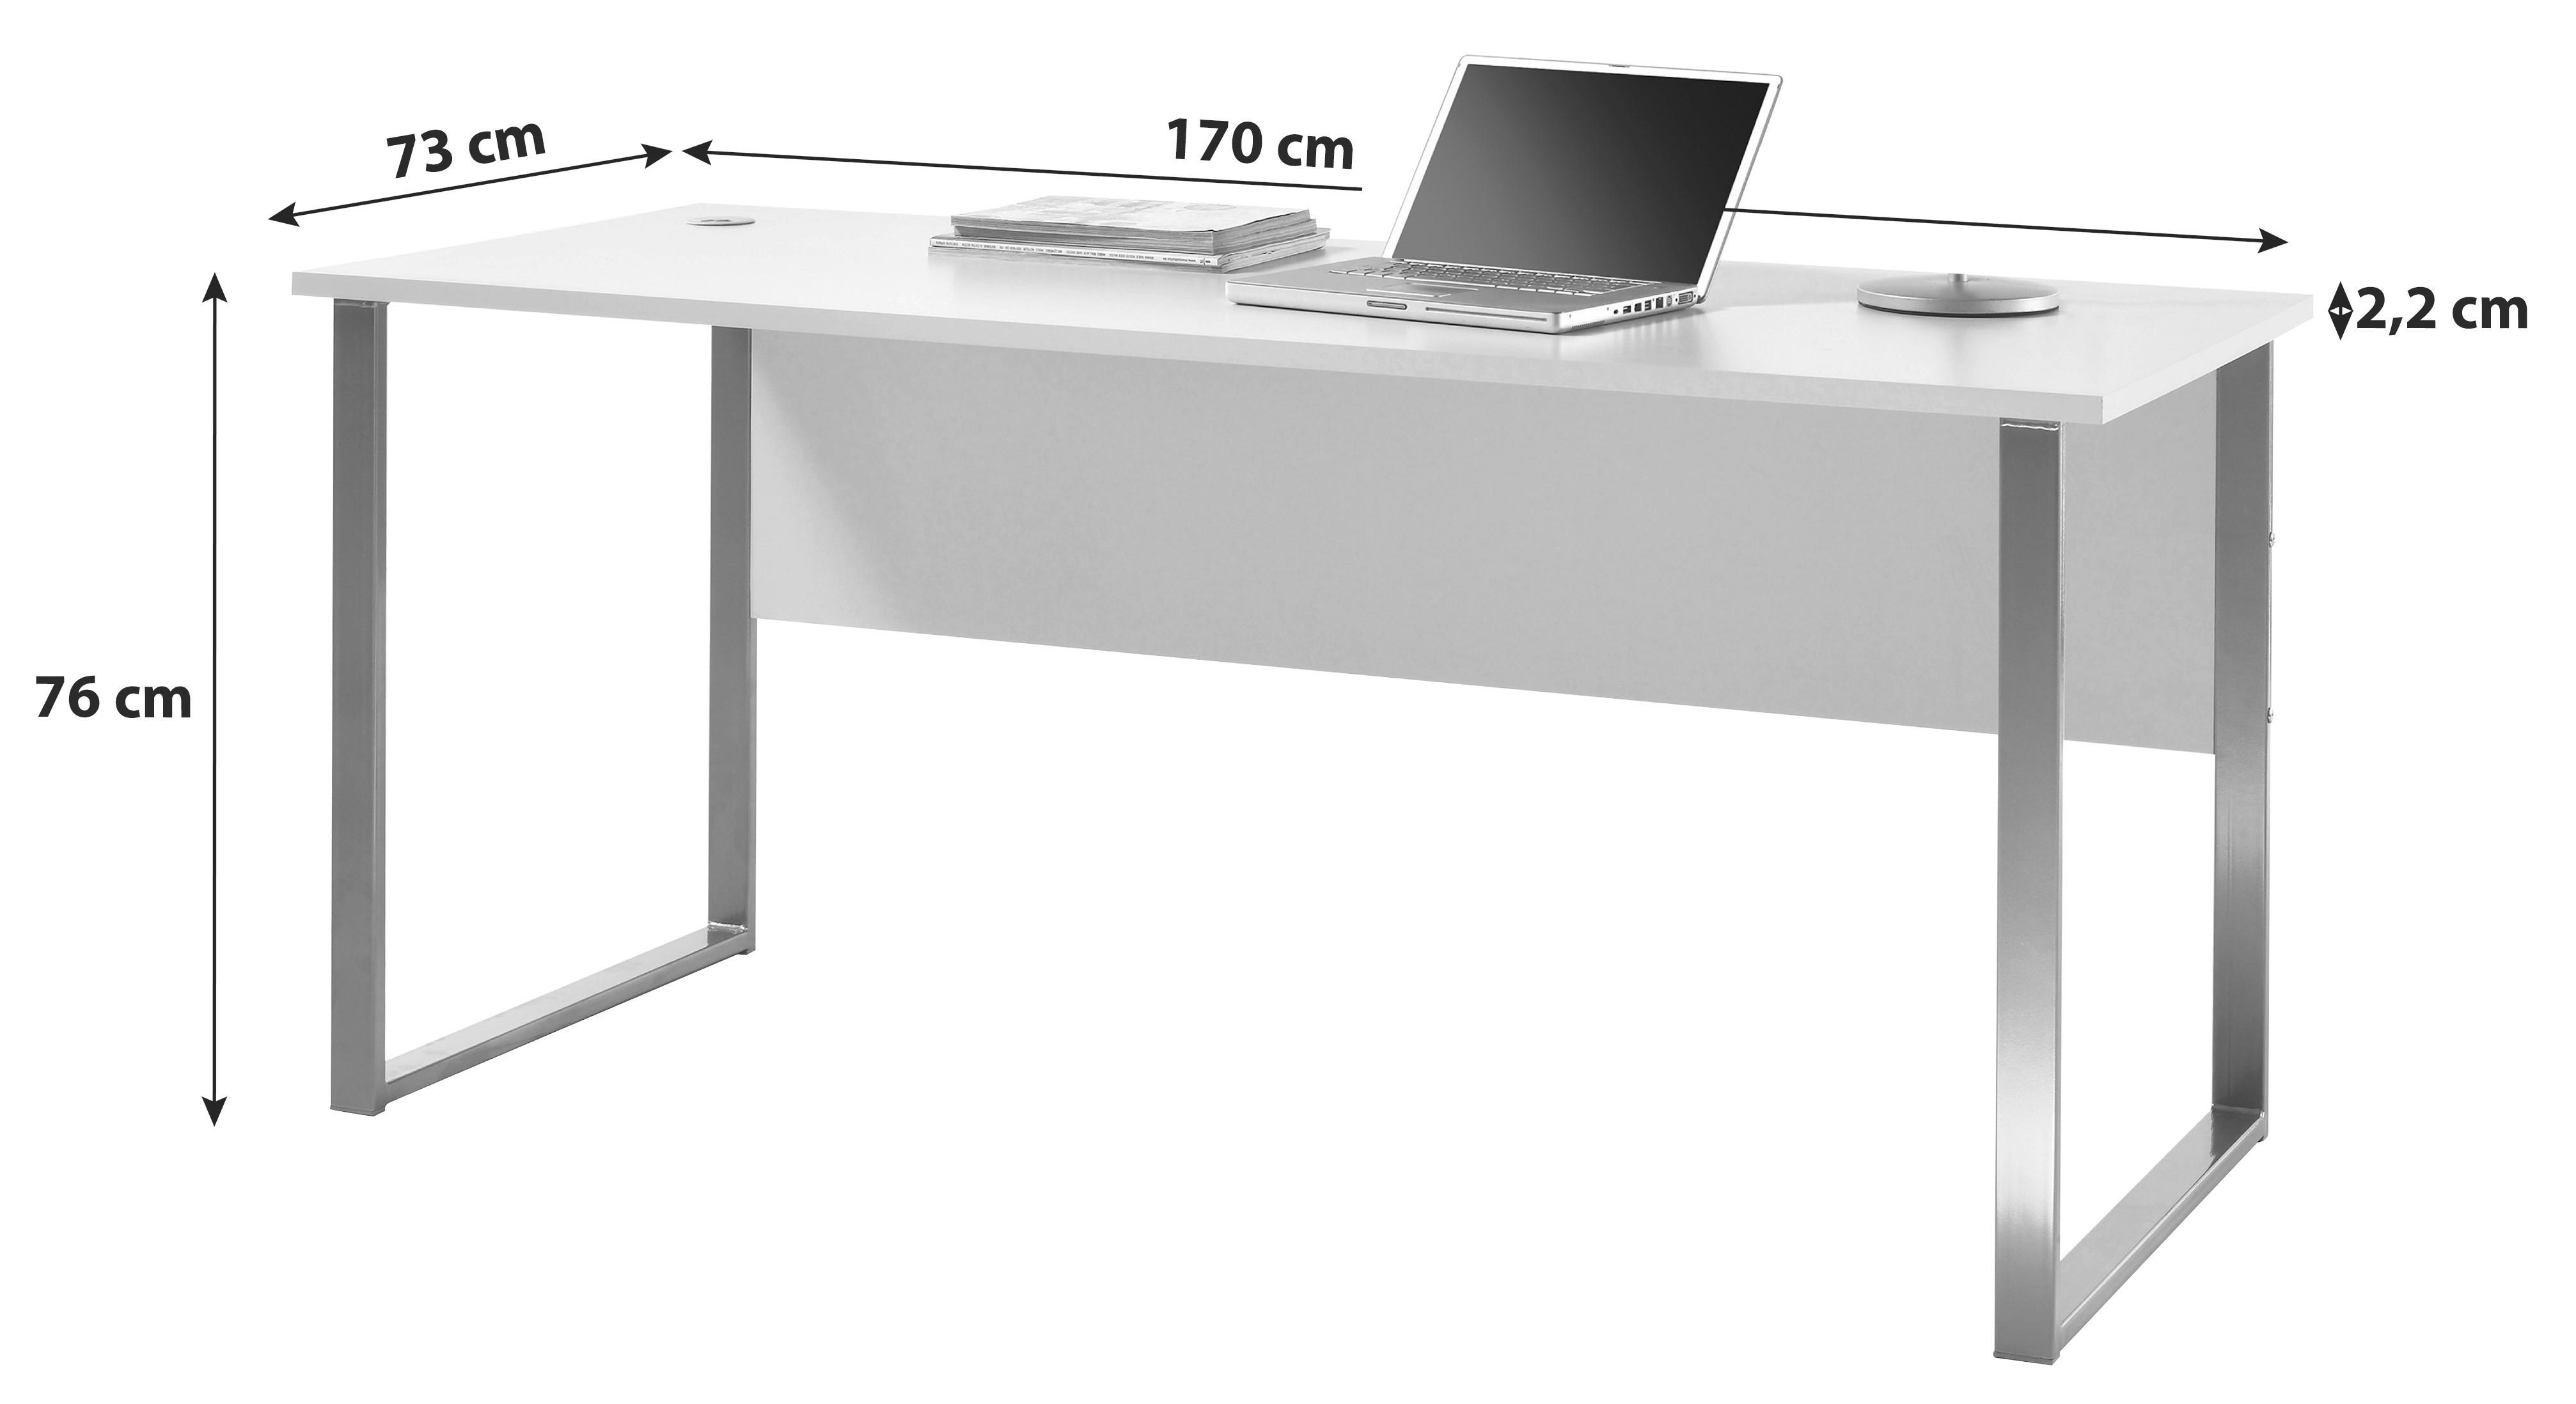 Schreibtisch B 170cm H 76cm Office Lux, Hellgrau - Silberfarben/Hellgrau, Design, Holzwerkstoff/Metall (170/73/76cm) - MID.YOU